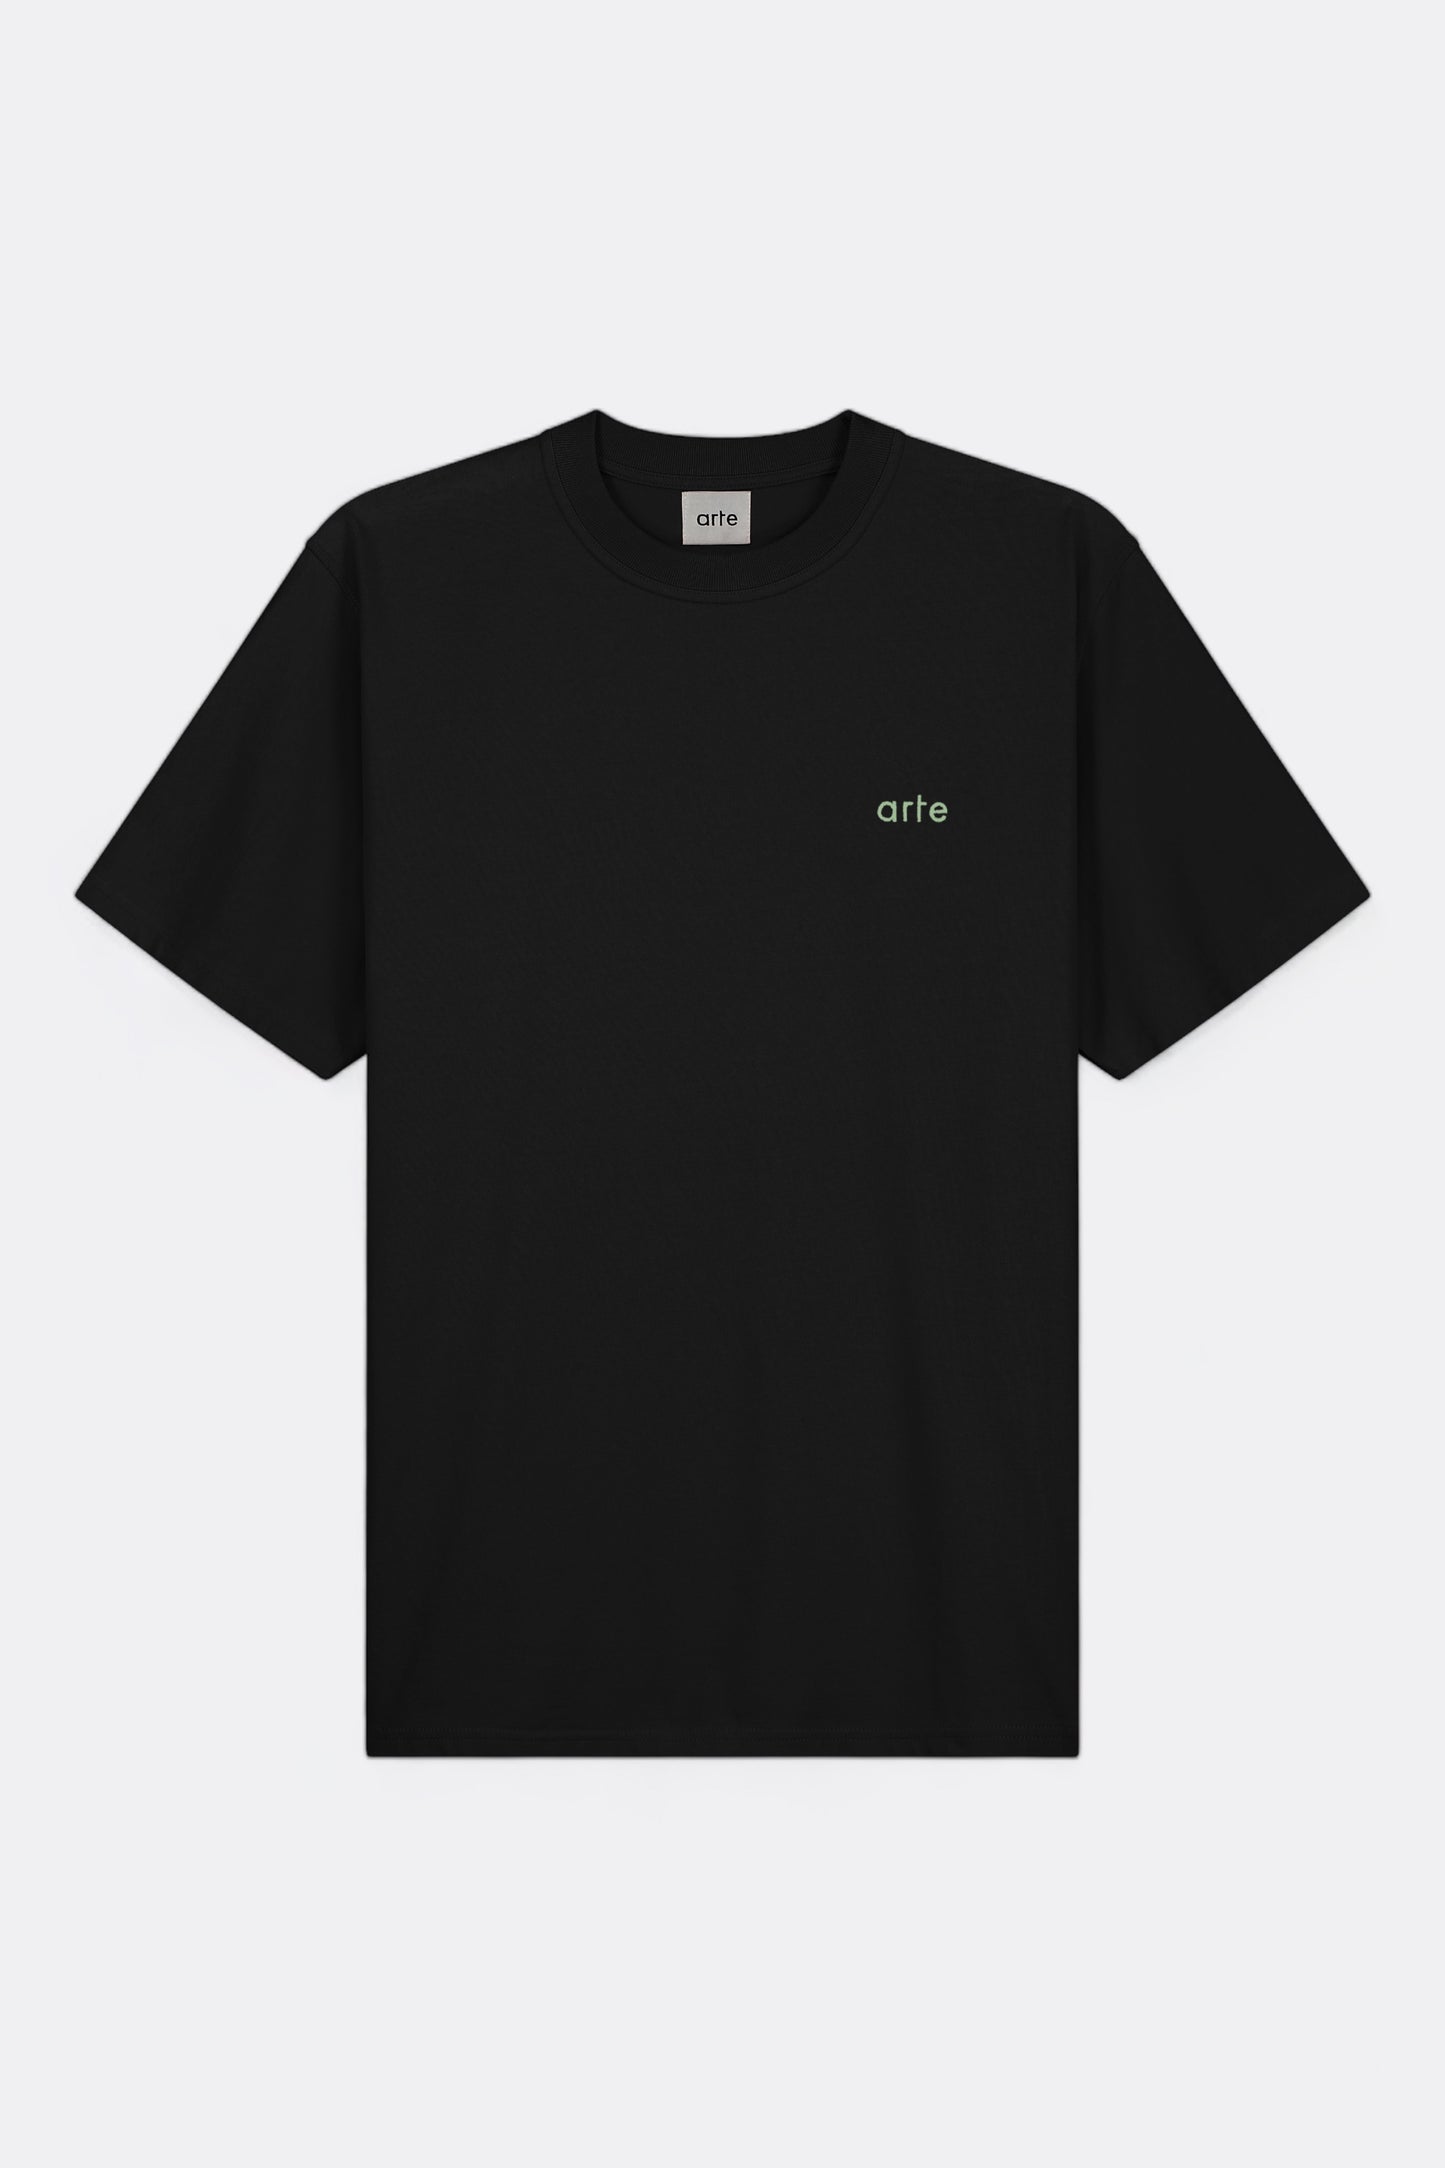 Arte - Teo Back Multi Runner T-shirt (Black)